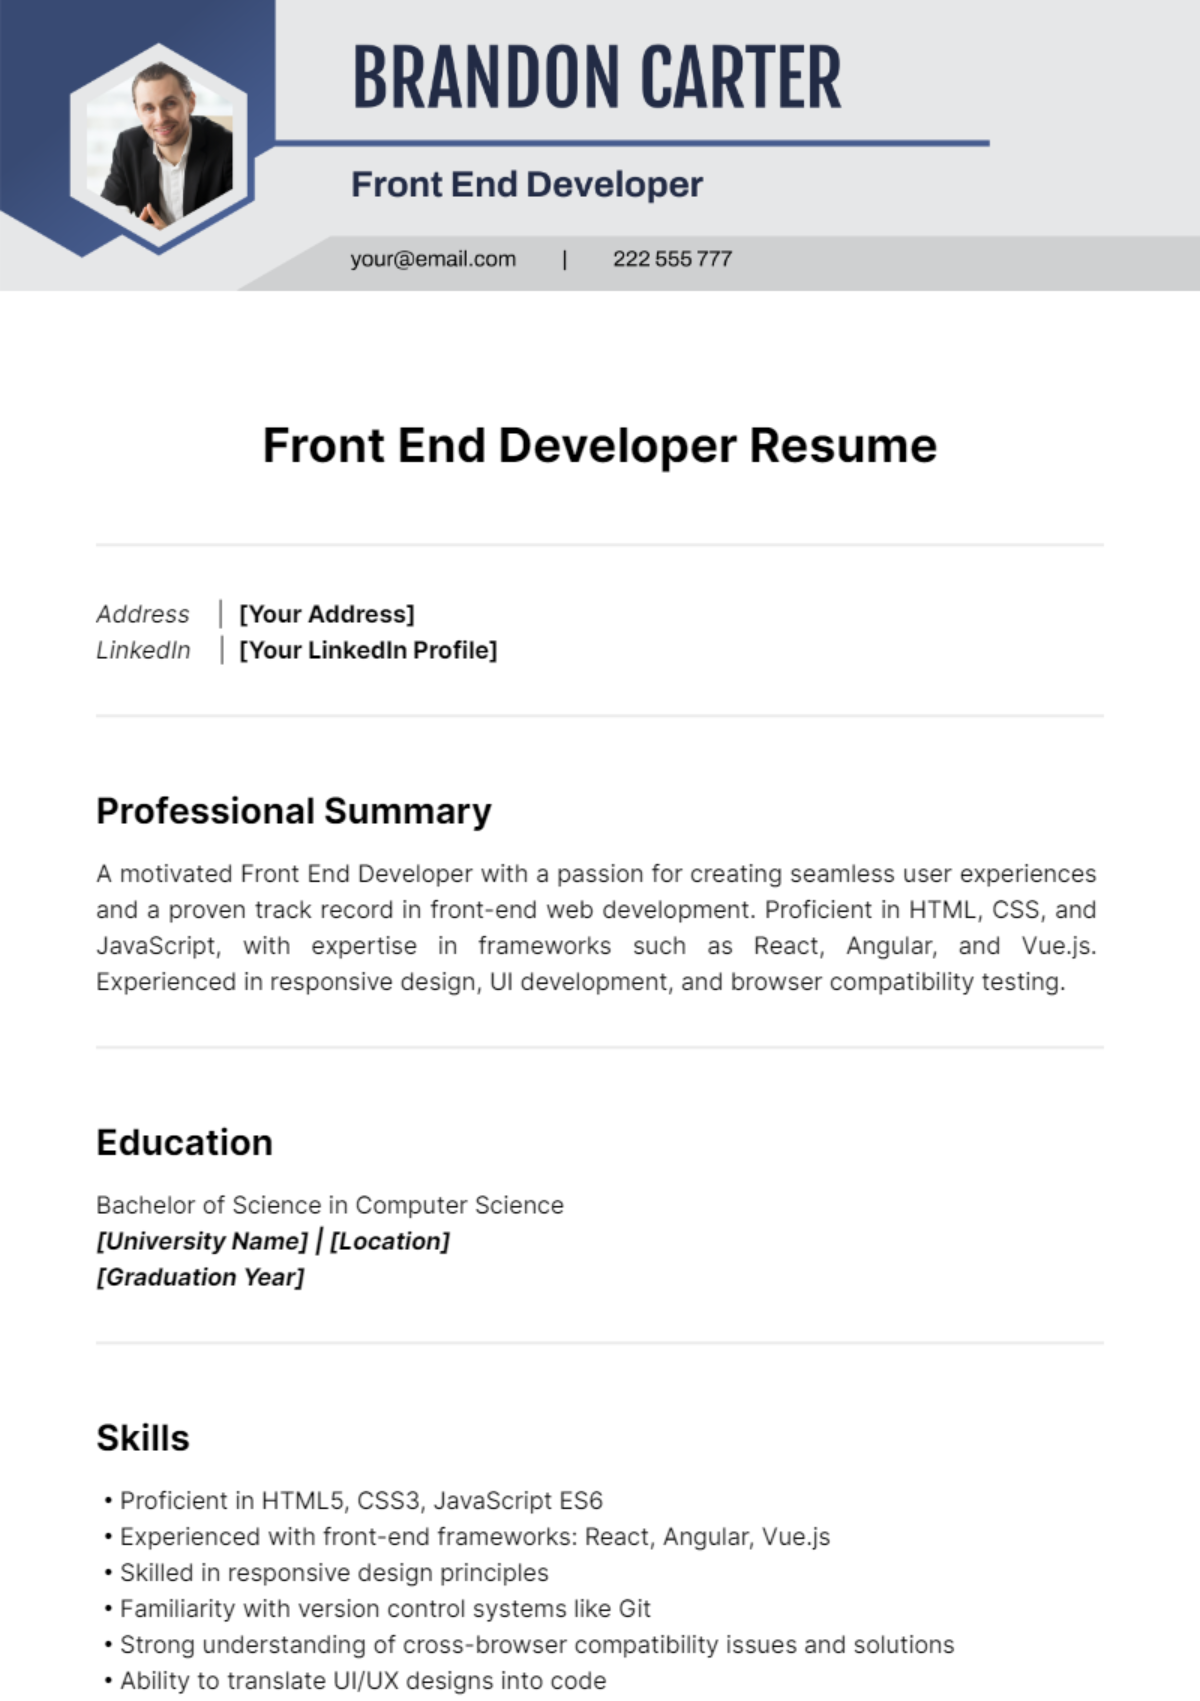 Front End Developer Resume Template